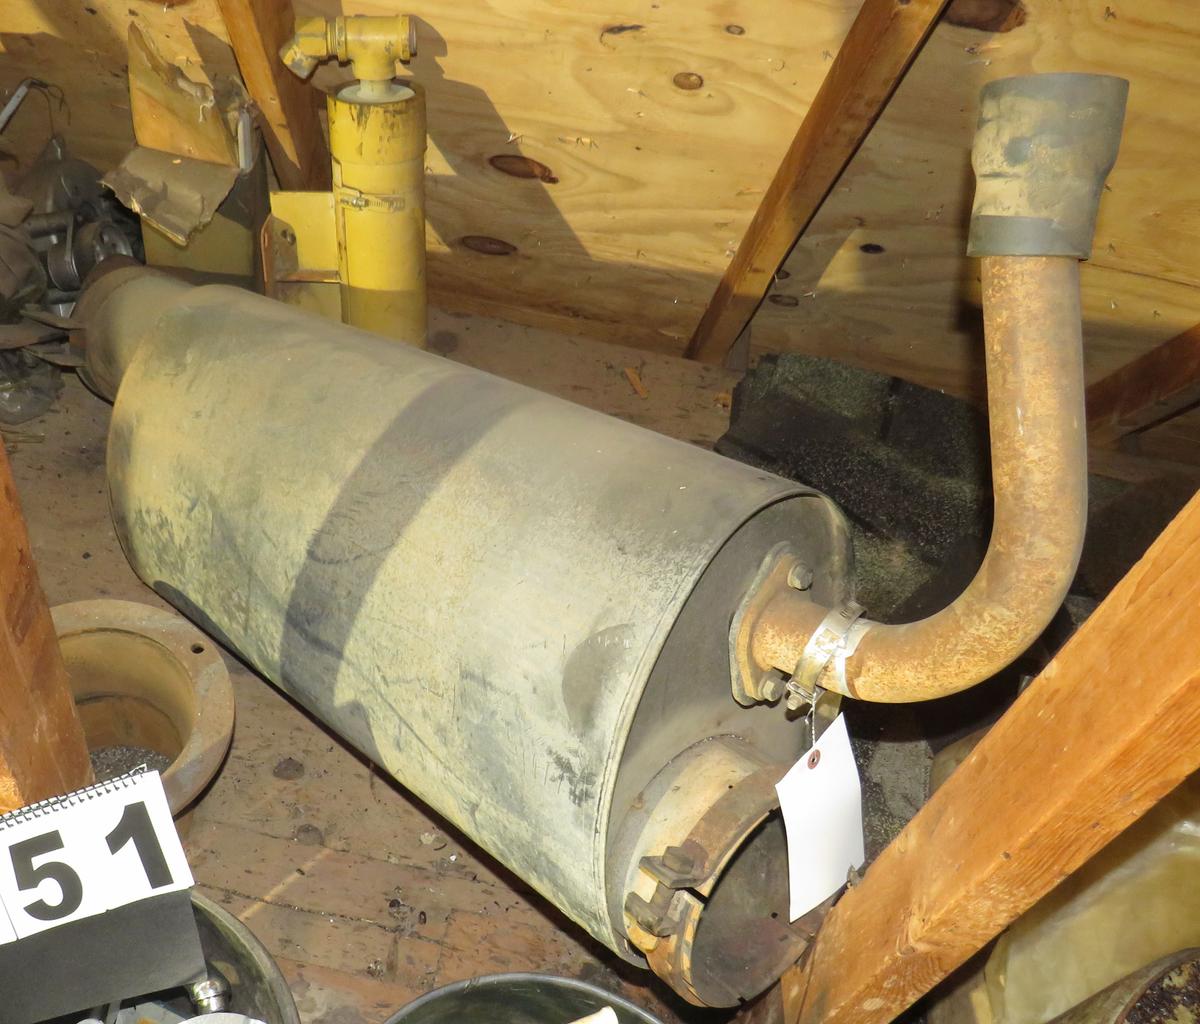 Diesel muffler, 7" pipe diameter inside